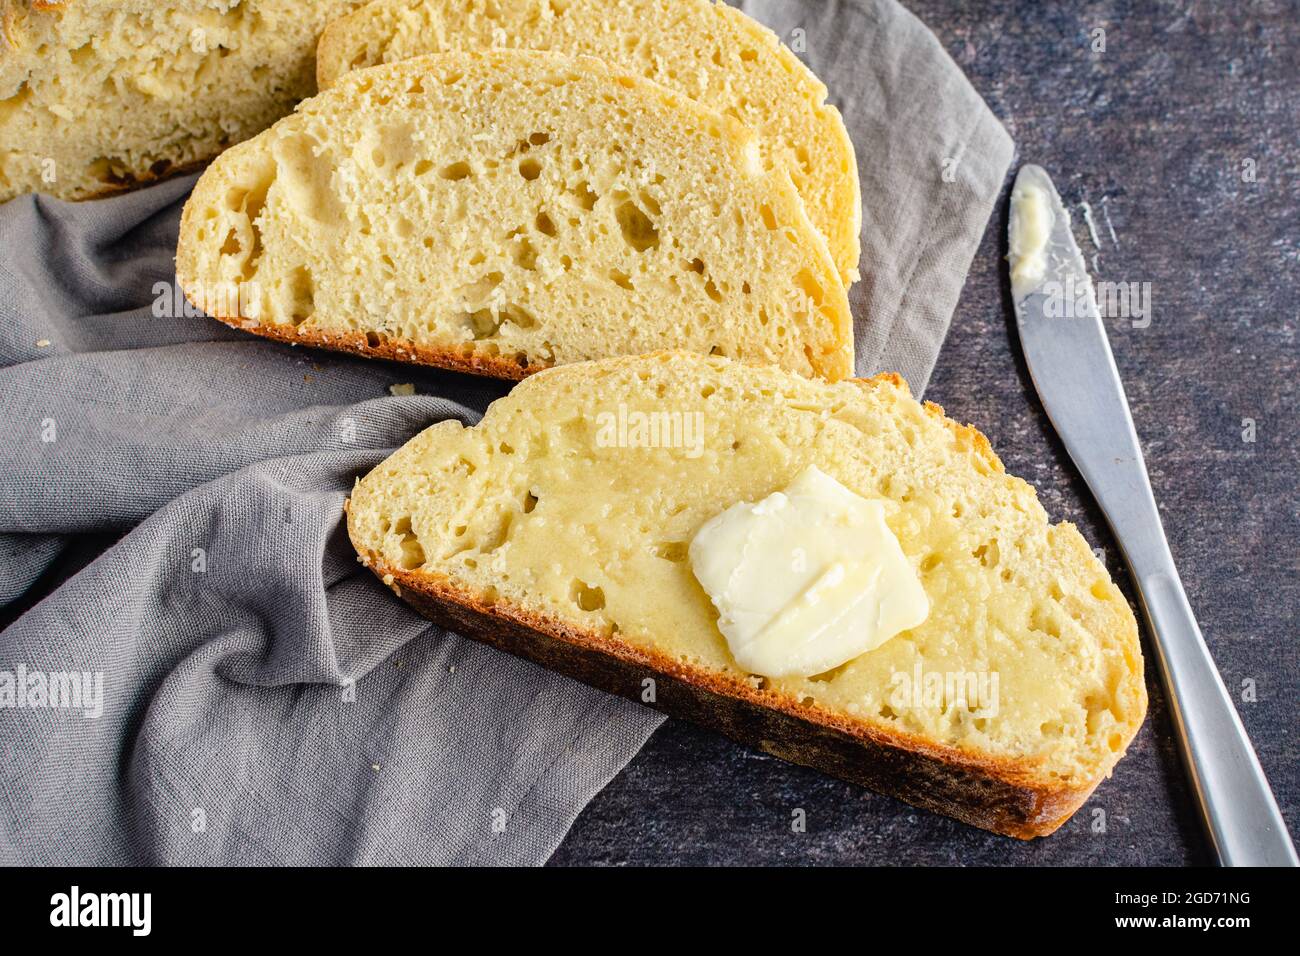 Tranches de pain français avec une Pat de beurre : tranche de pain français beurrée avec un couteau de table et une serviette en tissu Banque D'Images